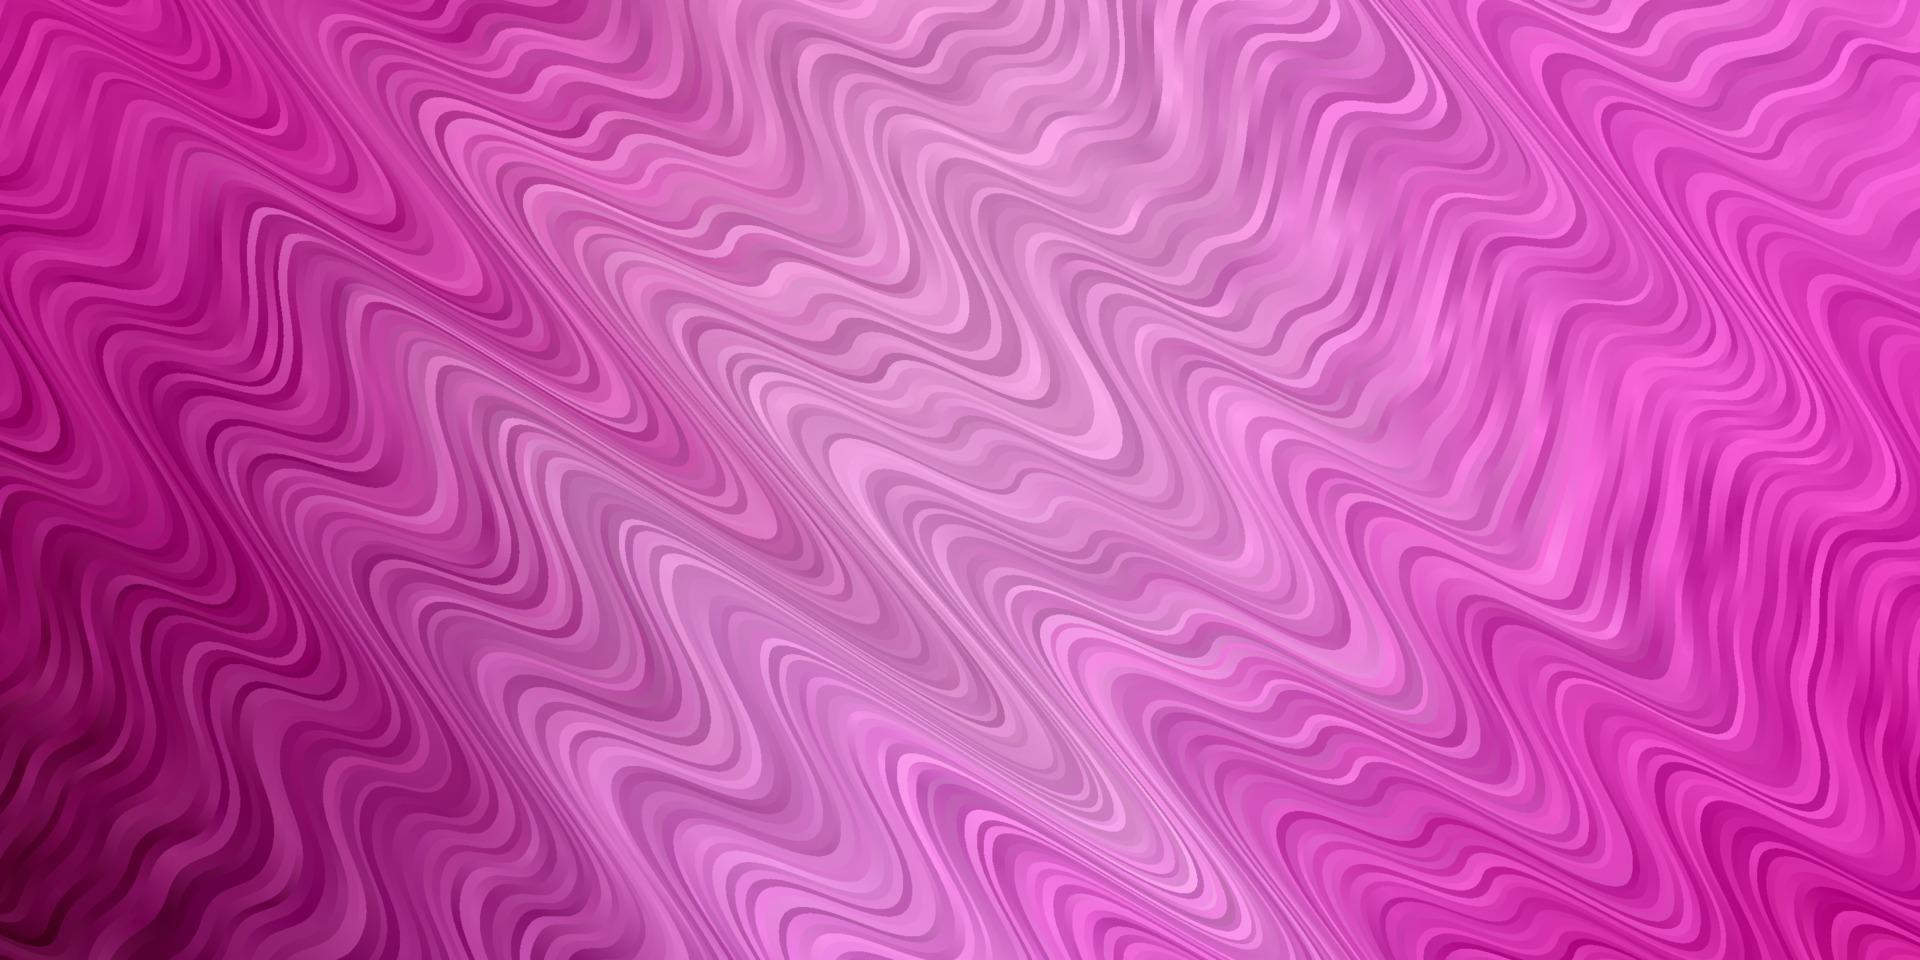 patrón de vector rosa claro con curvas.